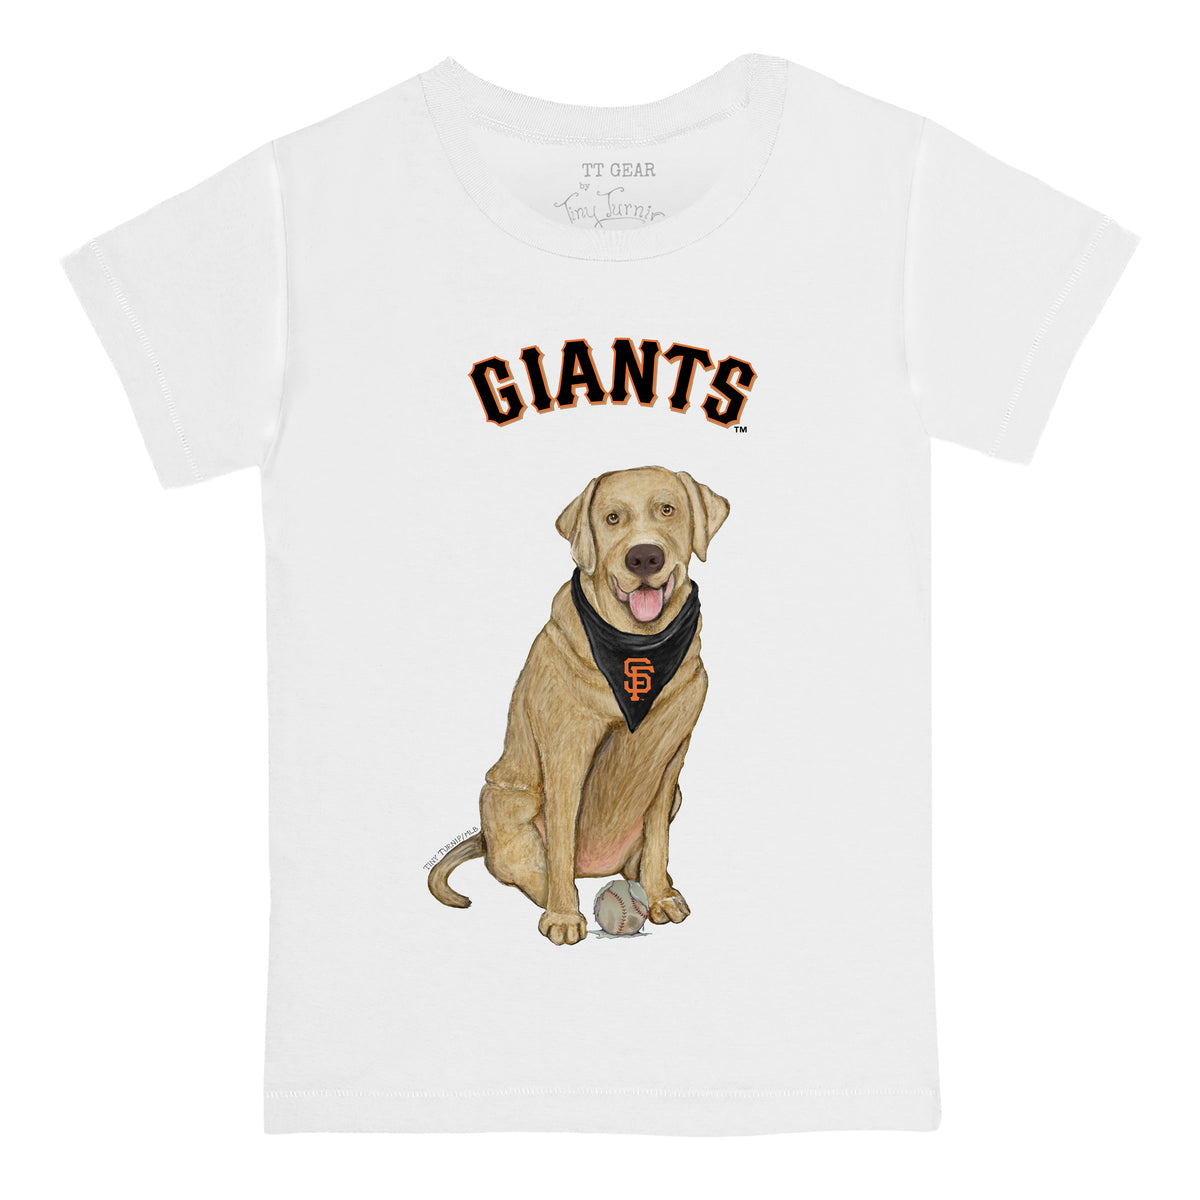 San Francisco Giants Yellow Labrador Retriever Tee Shirt